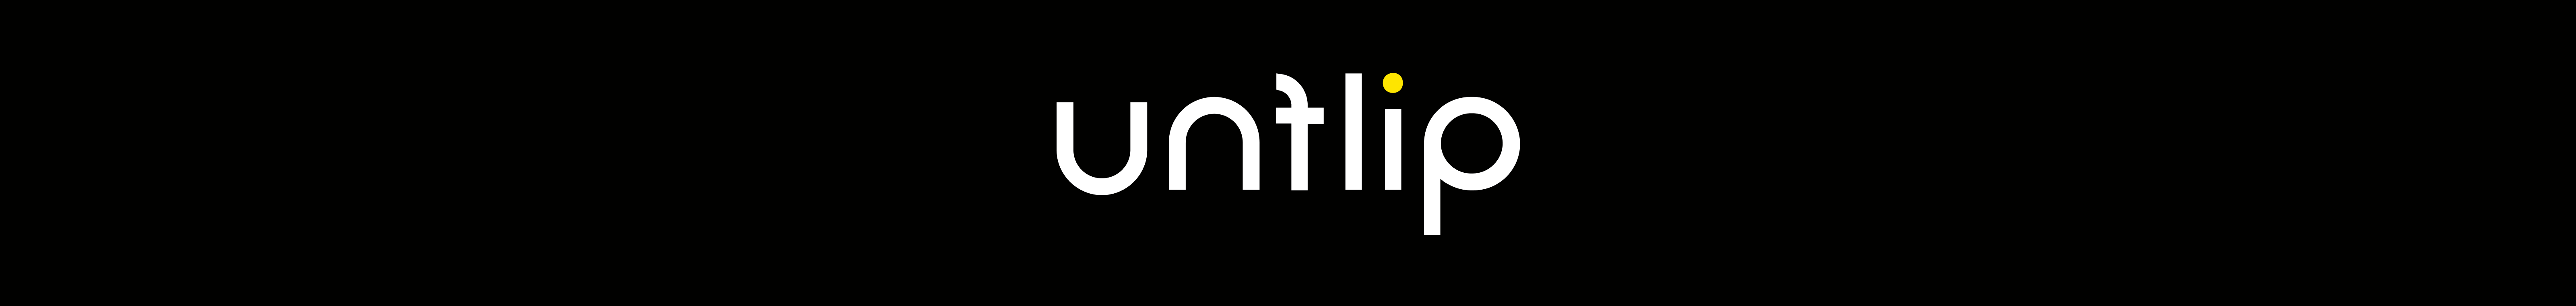 Баннер профиля Unflip .